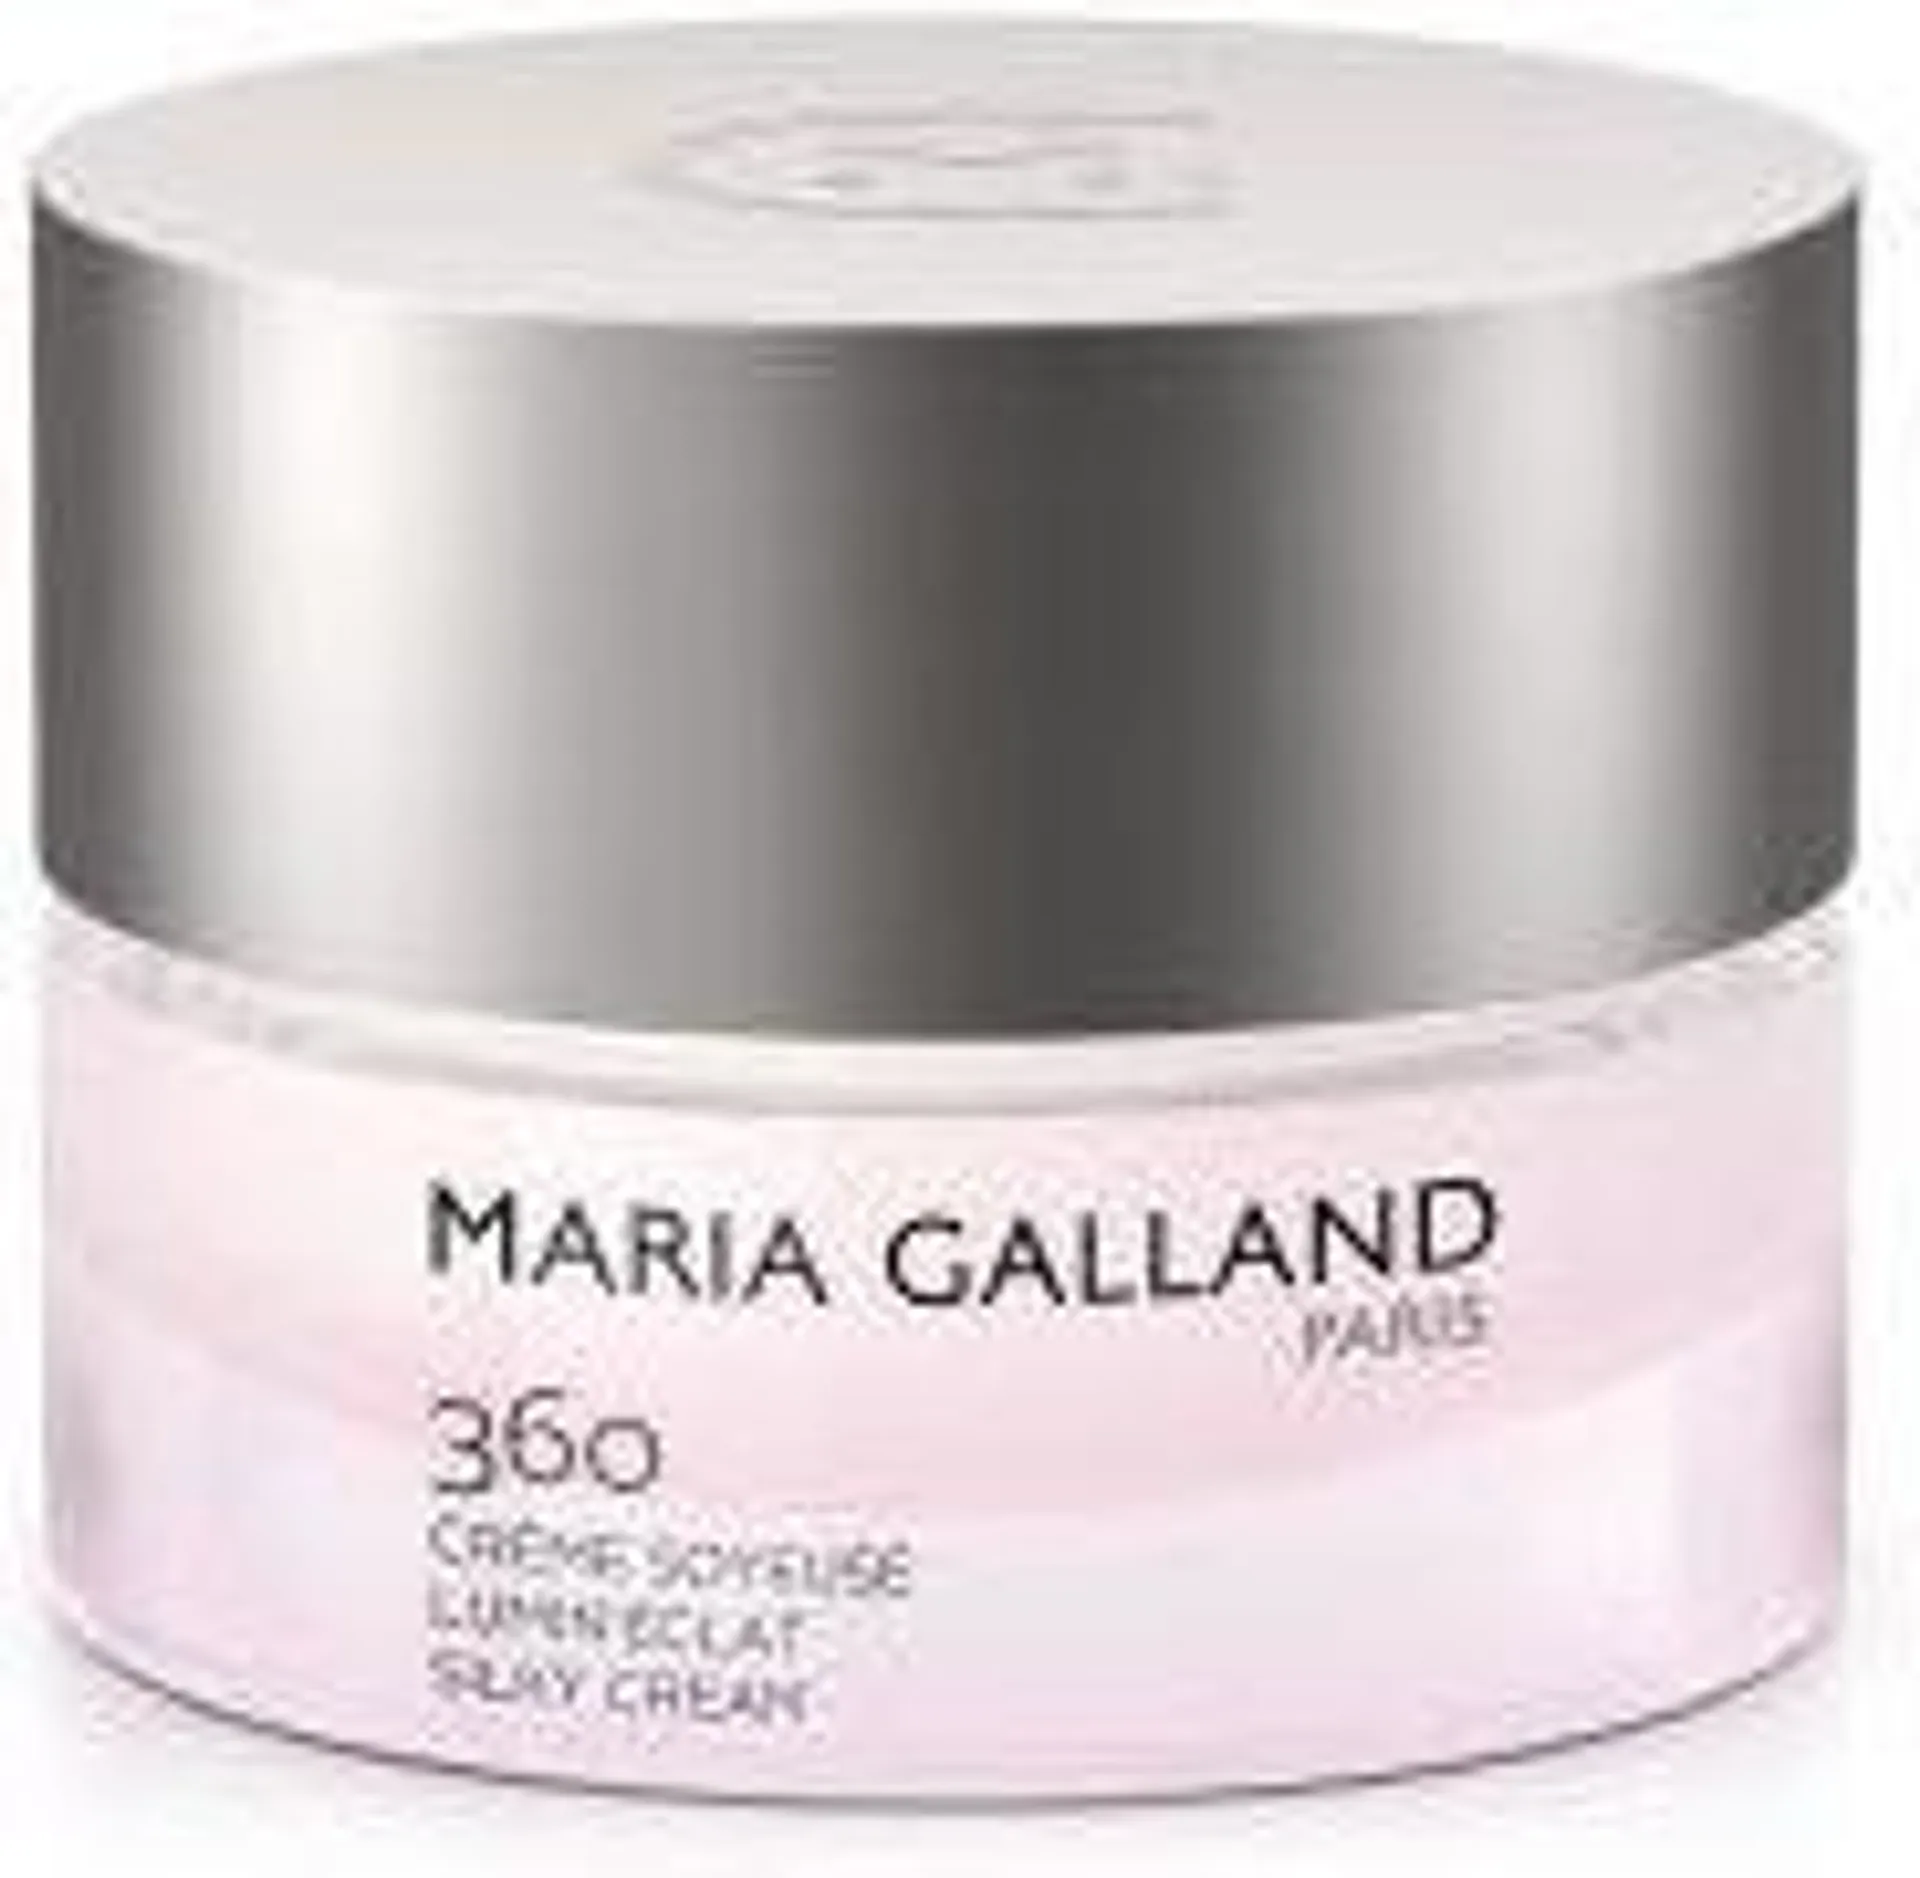 Maria Galland Lumin Eclat Cream 360 Rozświetlający krem młodości 50ml